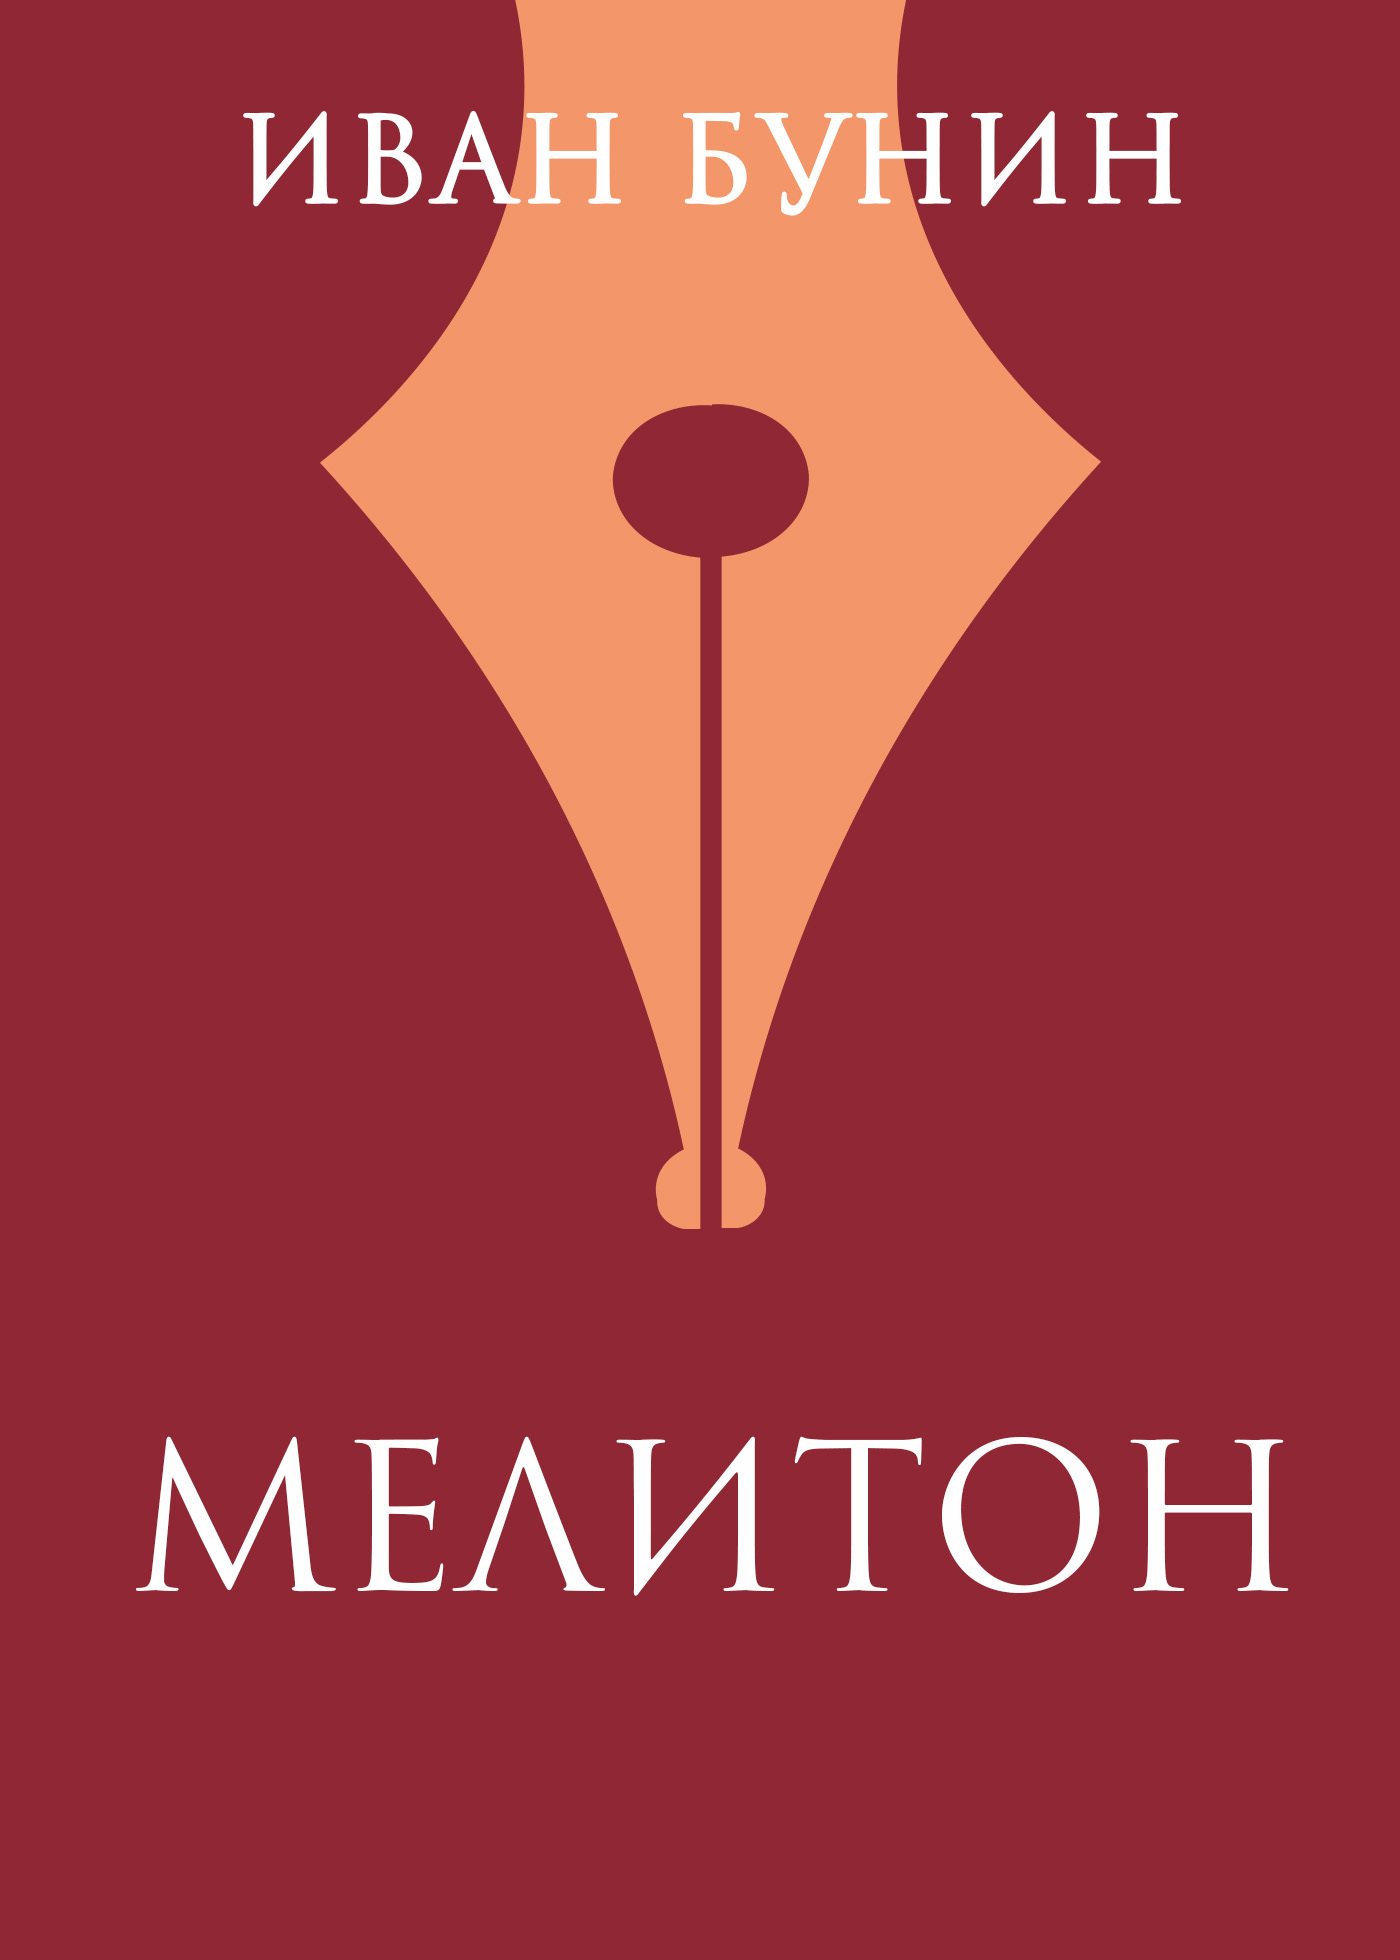 Книга Мелитон из серии , созданная Иван Бунин, может относится к жанру Русская классика. Стоимость электронной книги Мелитон с идентификатором 48502552 составляет 5.99 руб.